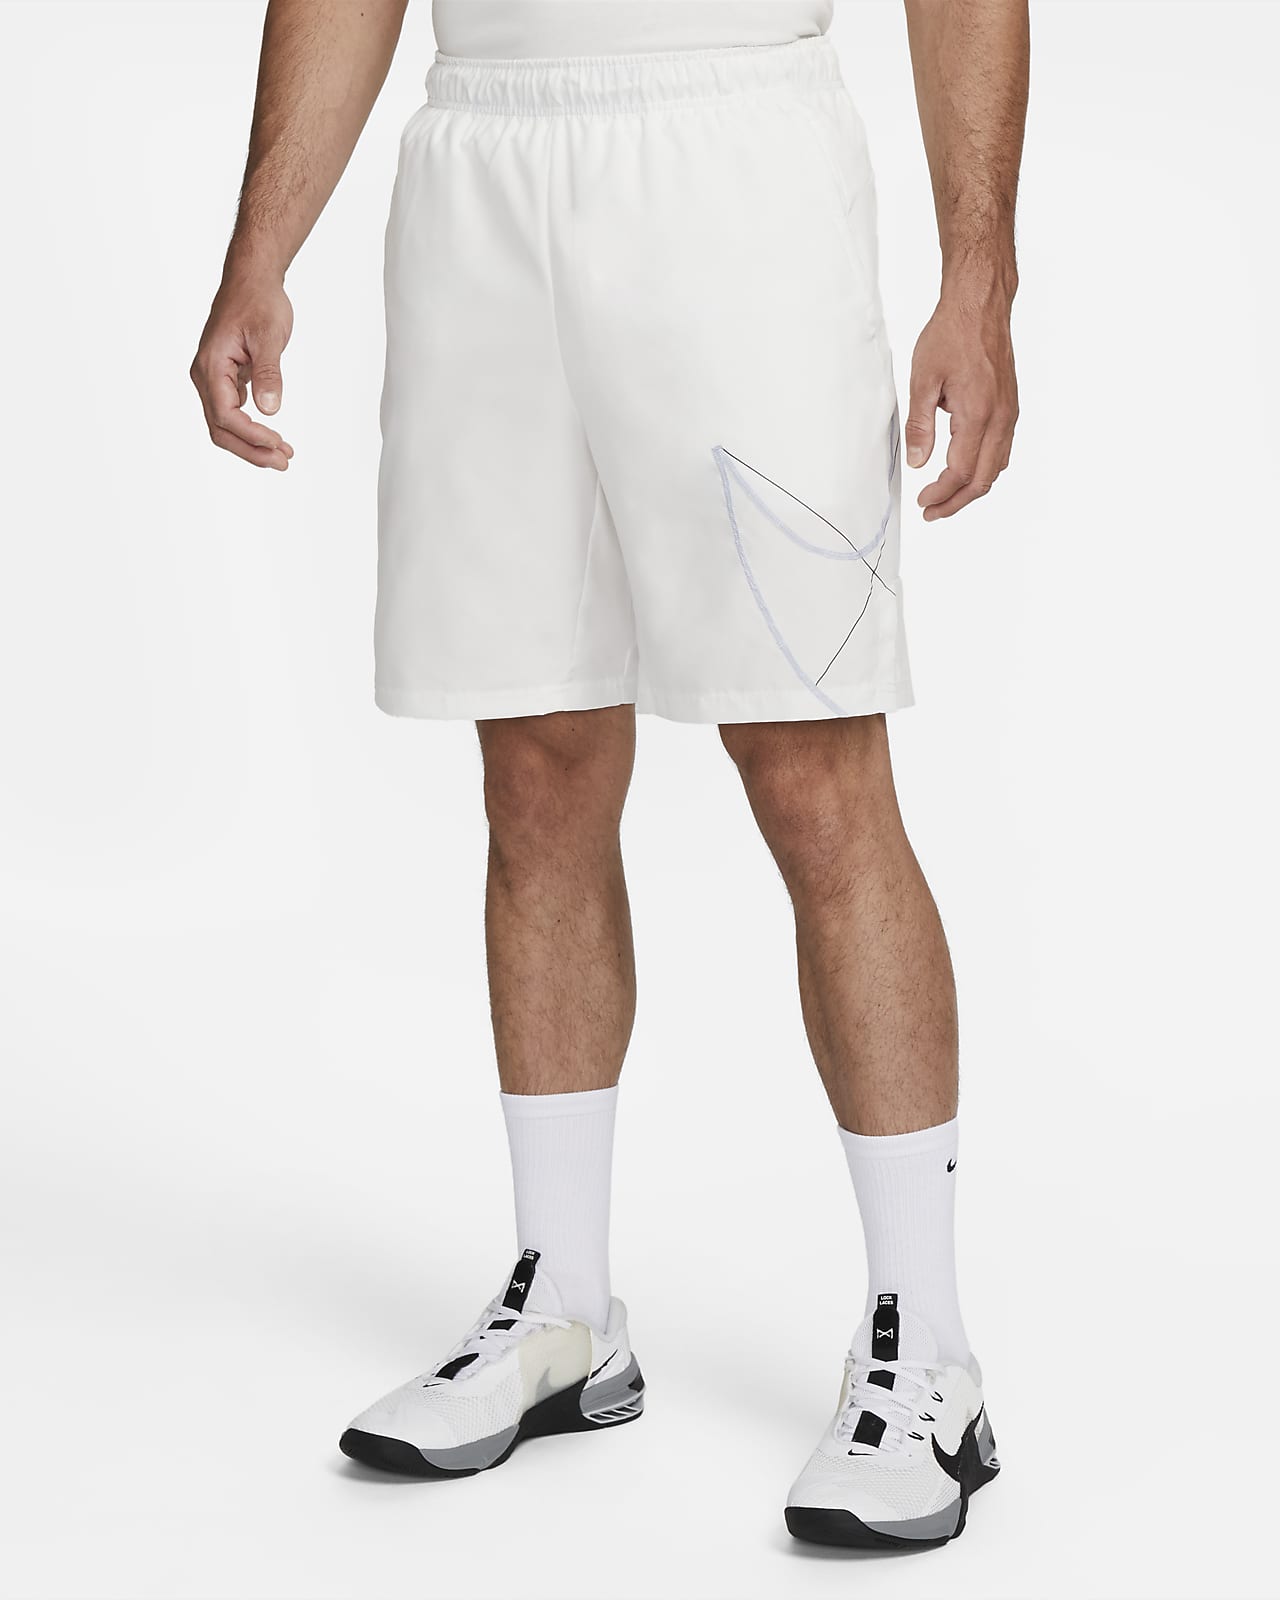 Shorts de fitness de 23 cm hombre tejido Woven Nike Flex. Nike .com